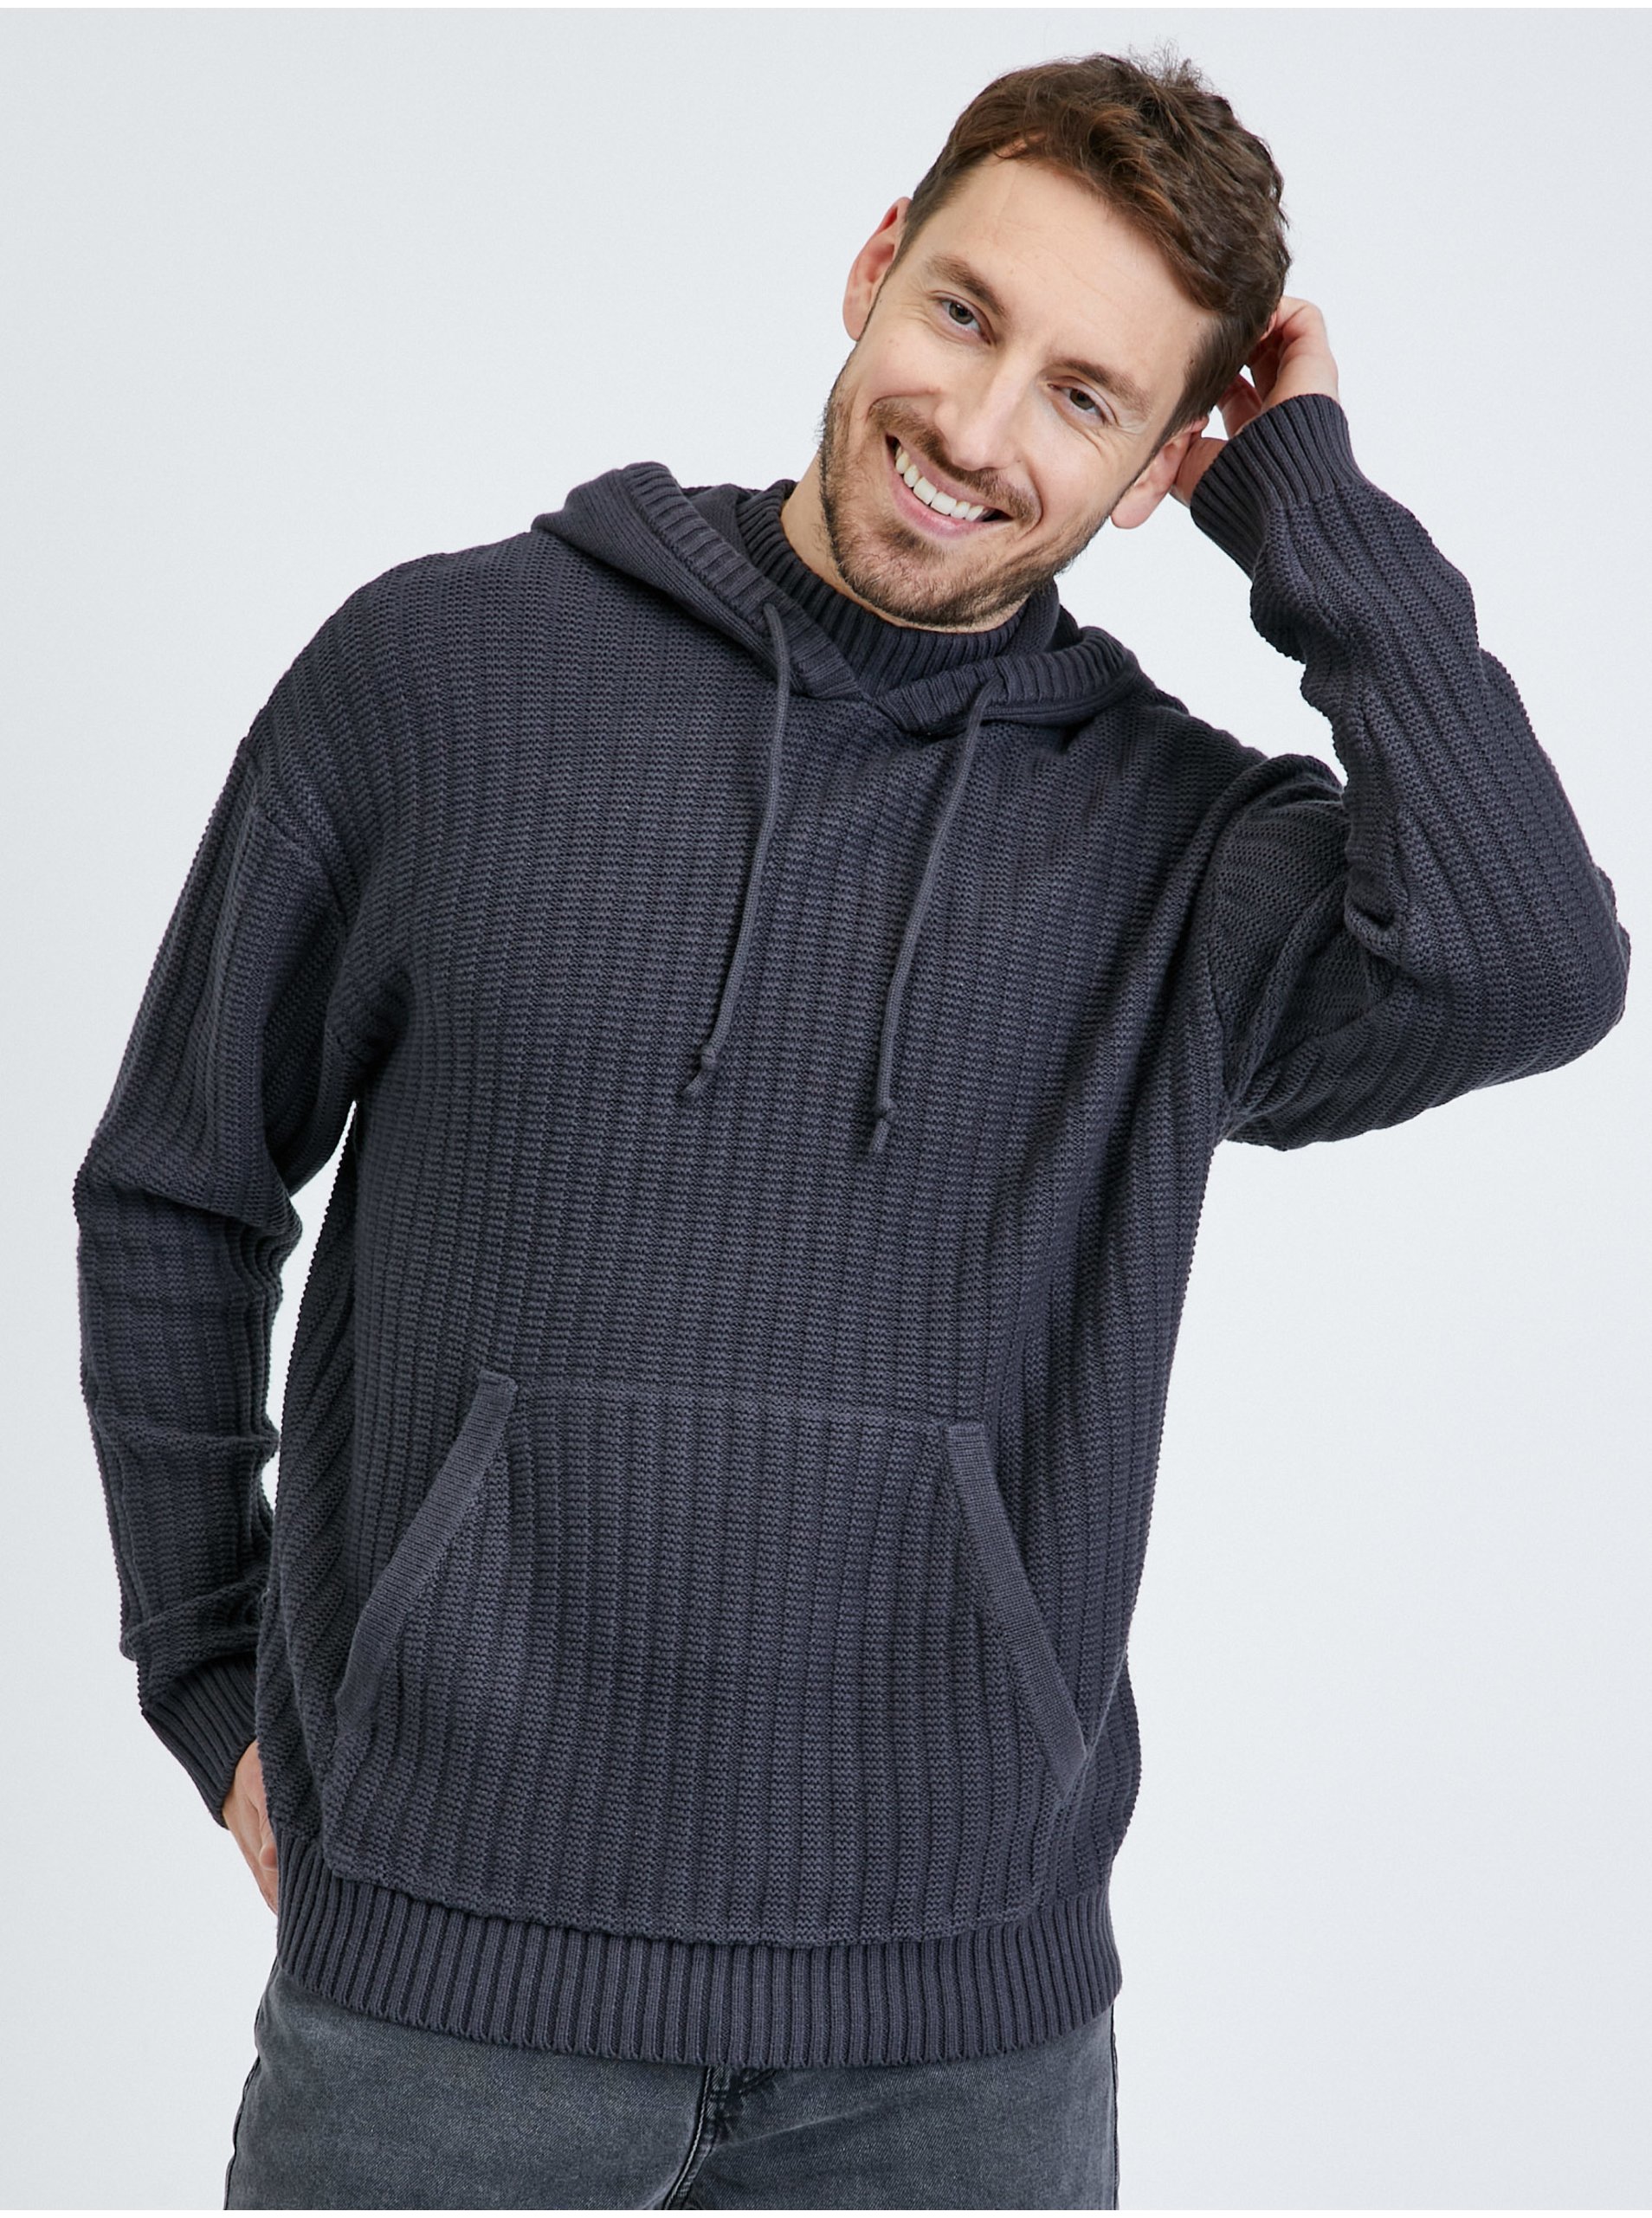 E-shop Tmavě šedý pánský žebrovaný svetr s kapucí Tom Tailor Denim